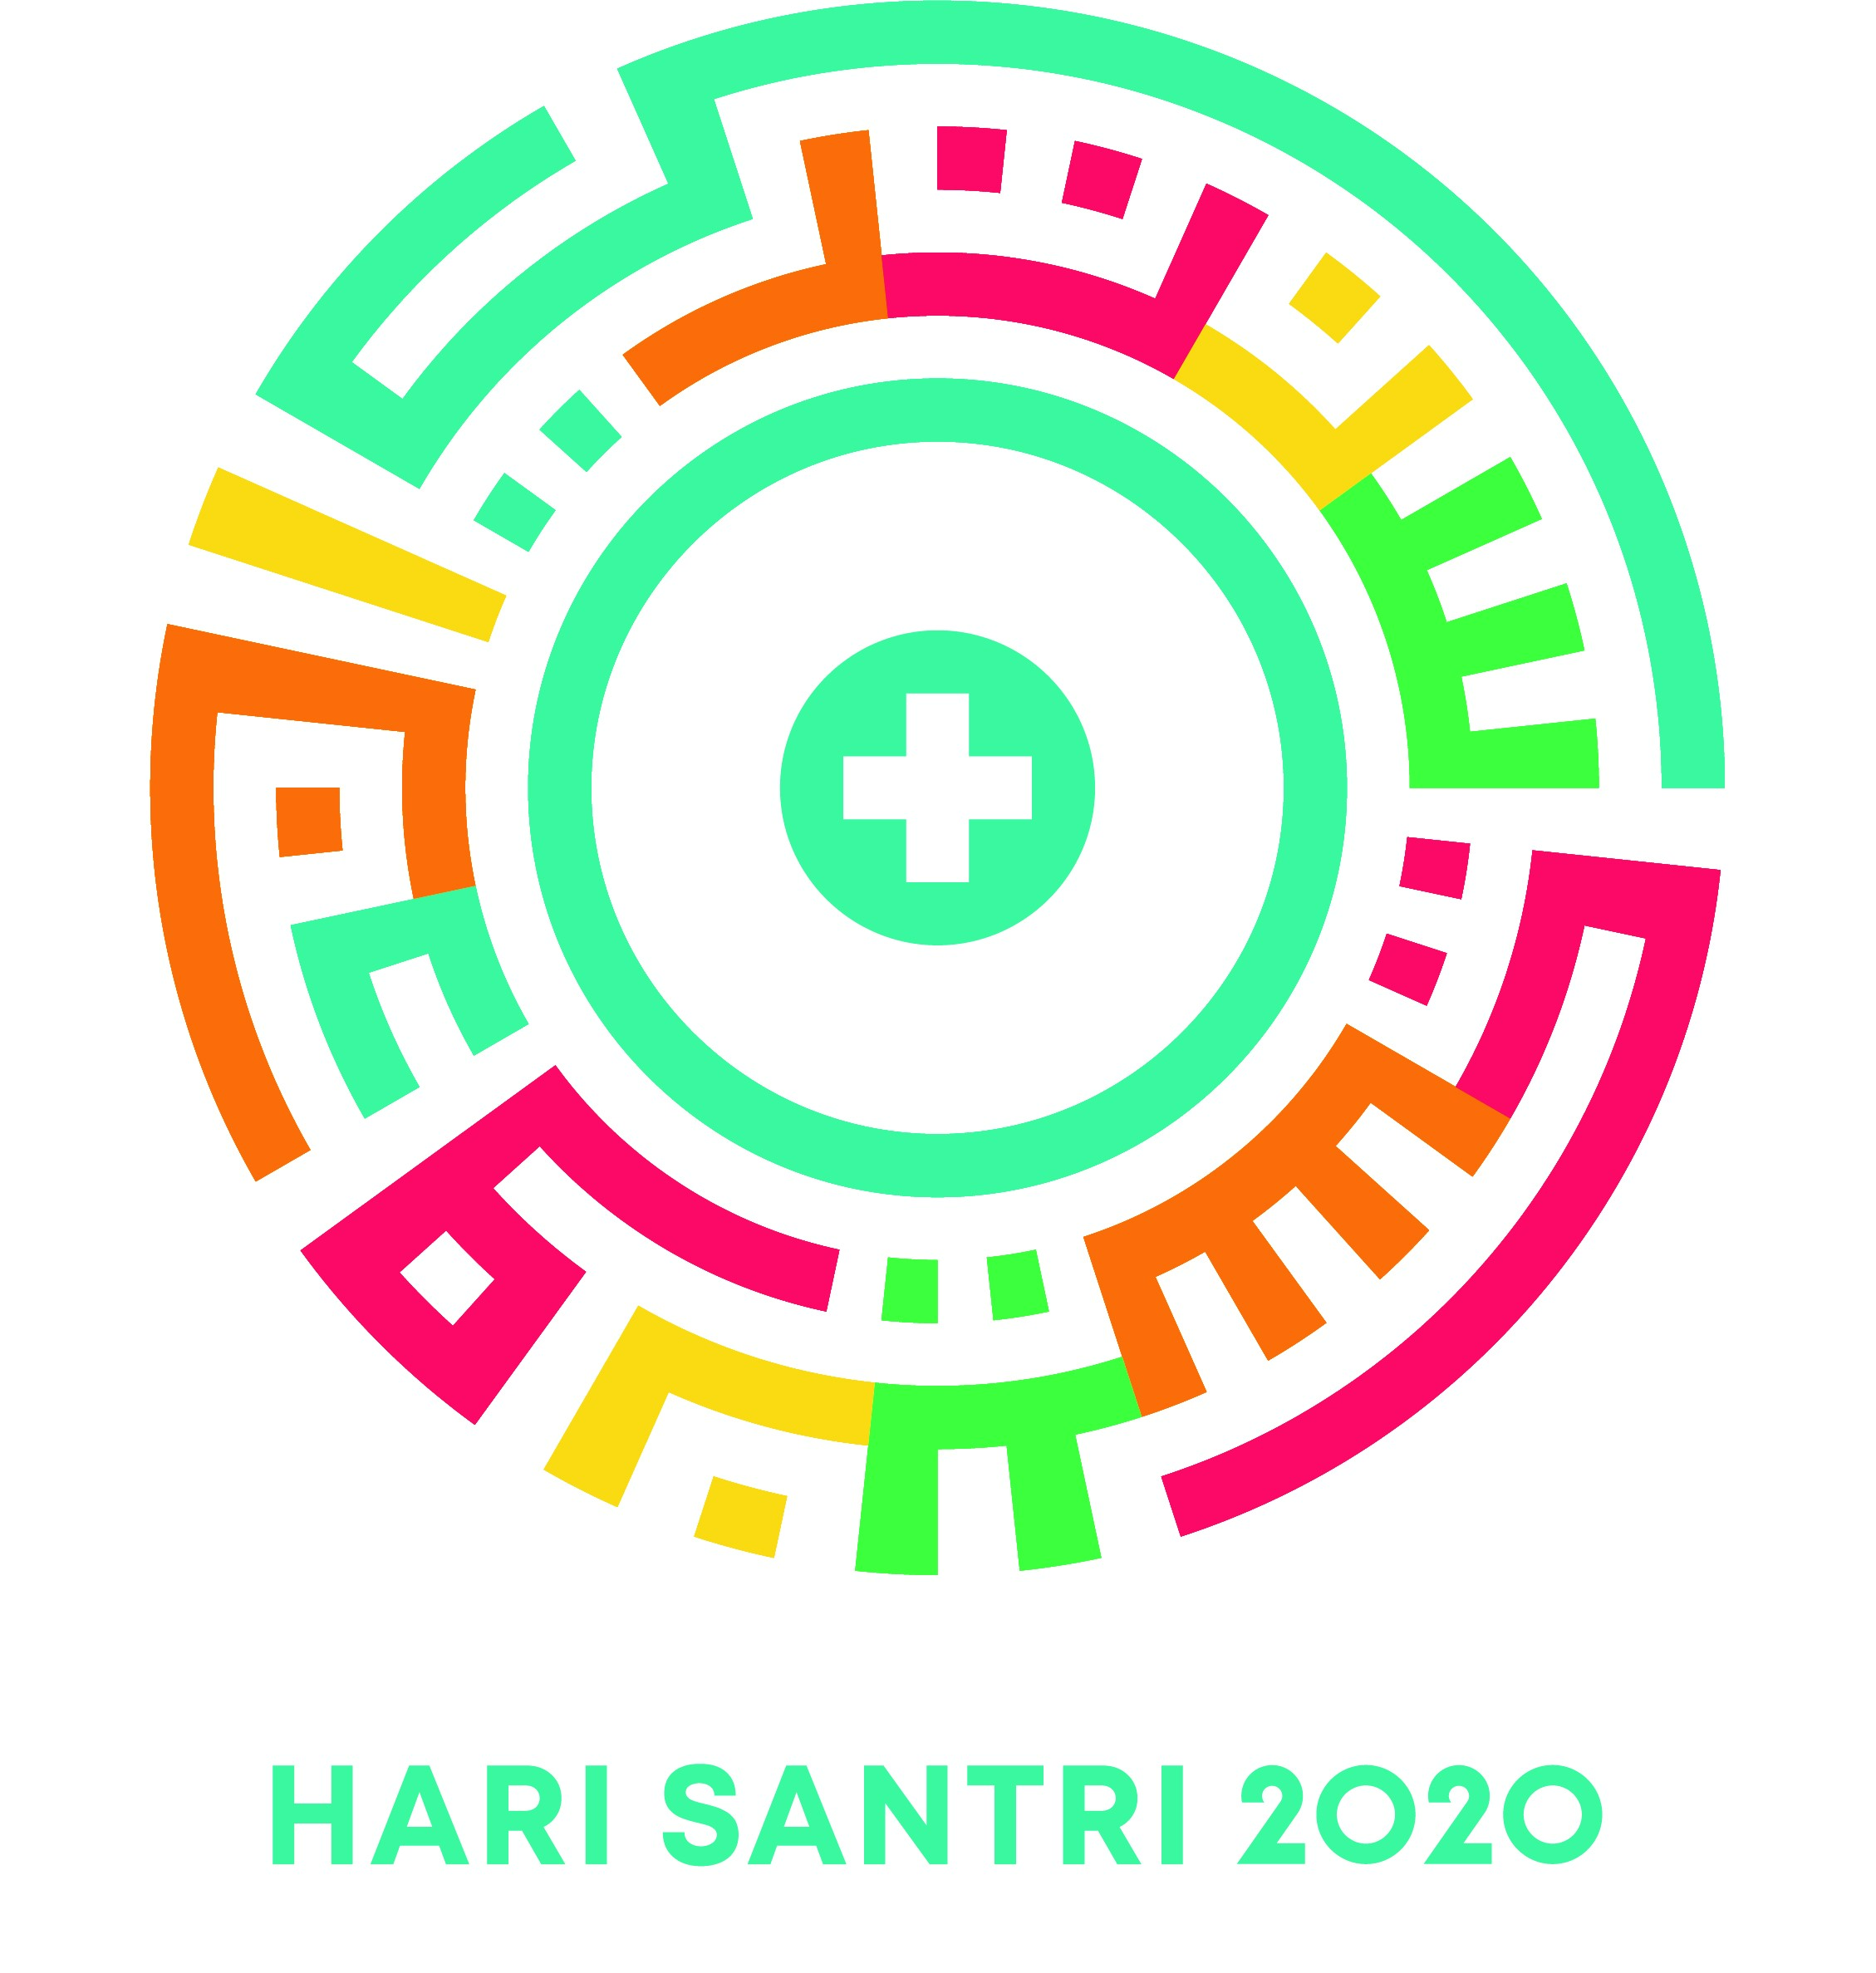 Inilah Logo Hari Santri 2020 - Download Resmi dari Kemenag RI dan PBNU